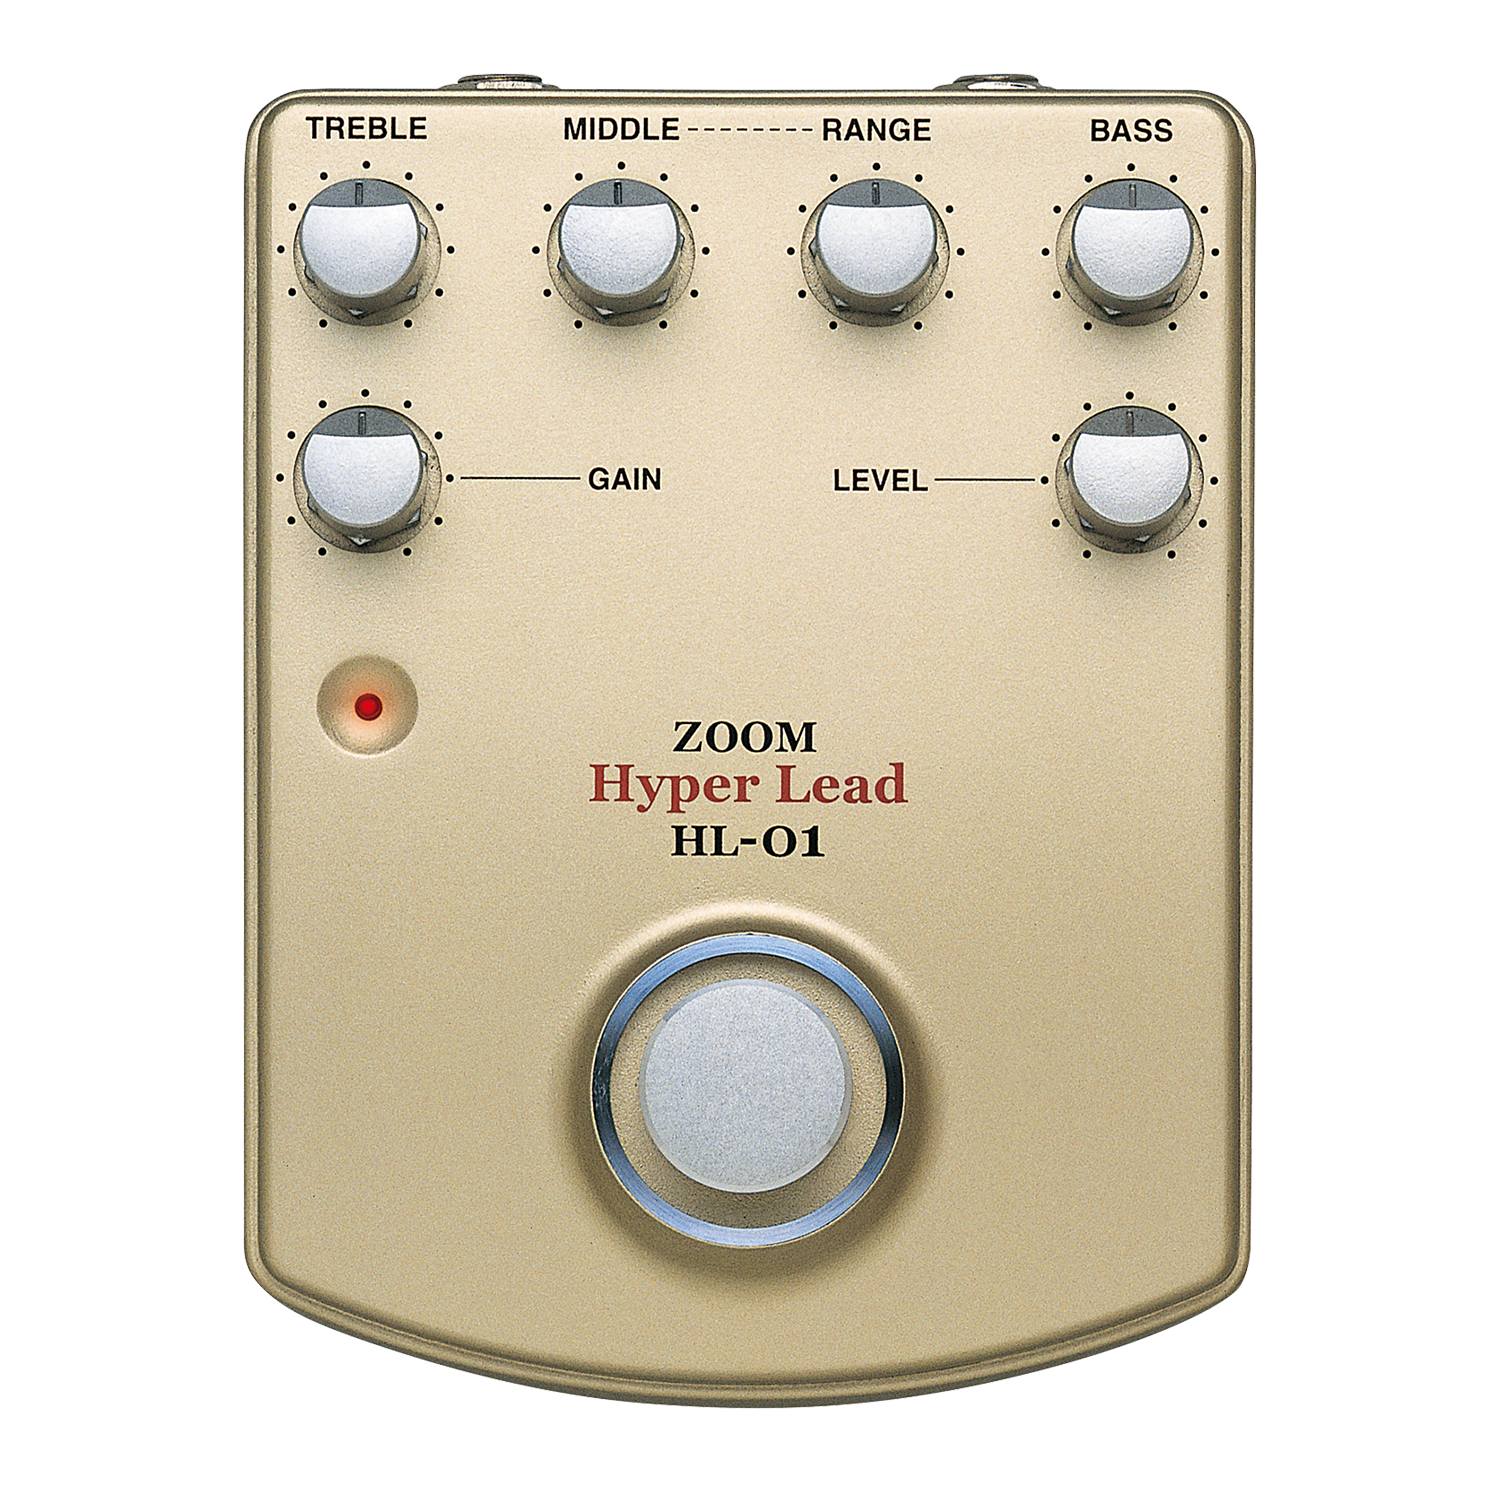 HL-01 ZOOM HYPER LEAD | Zoom